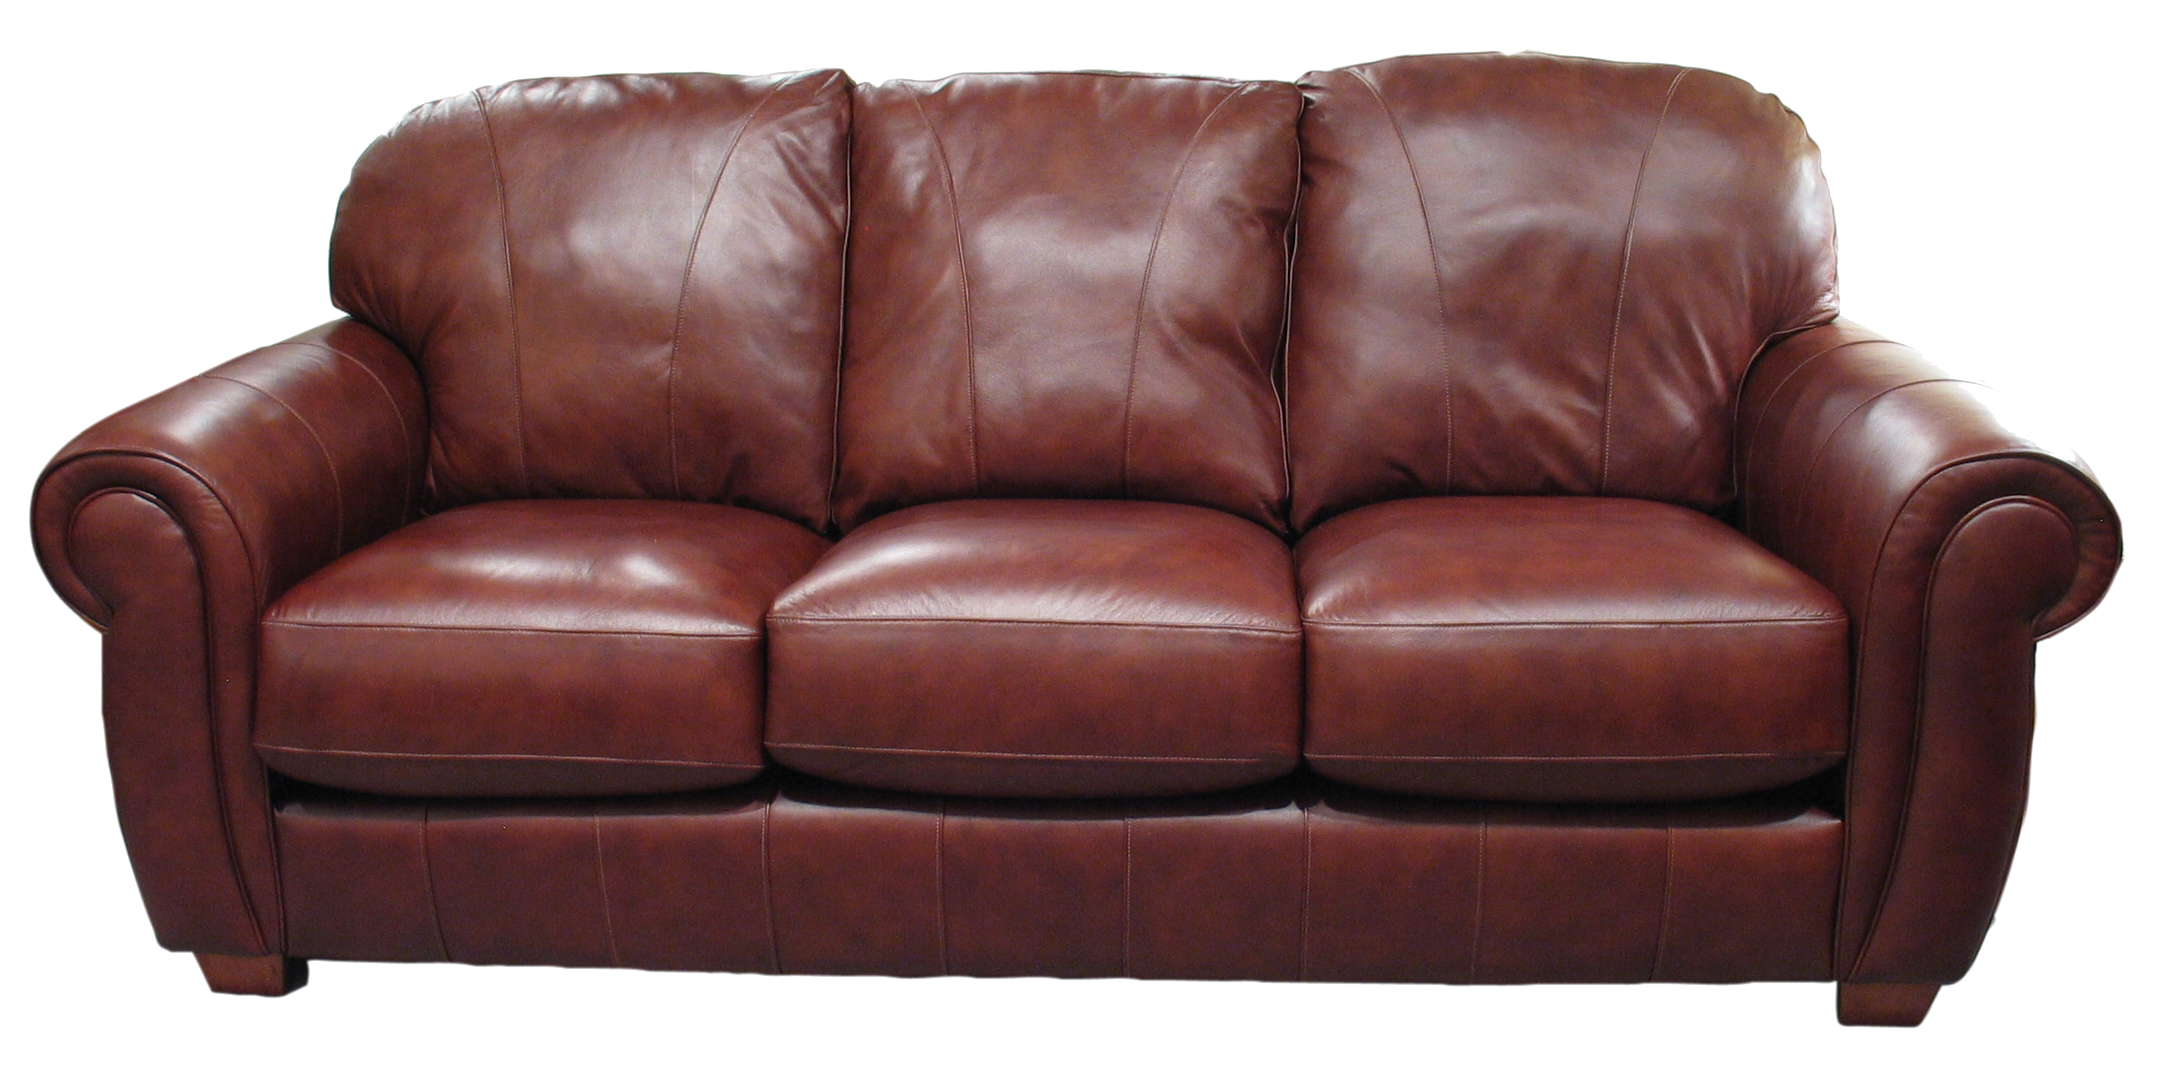 Brown sofa PNG image